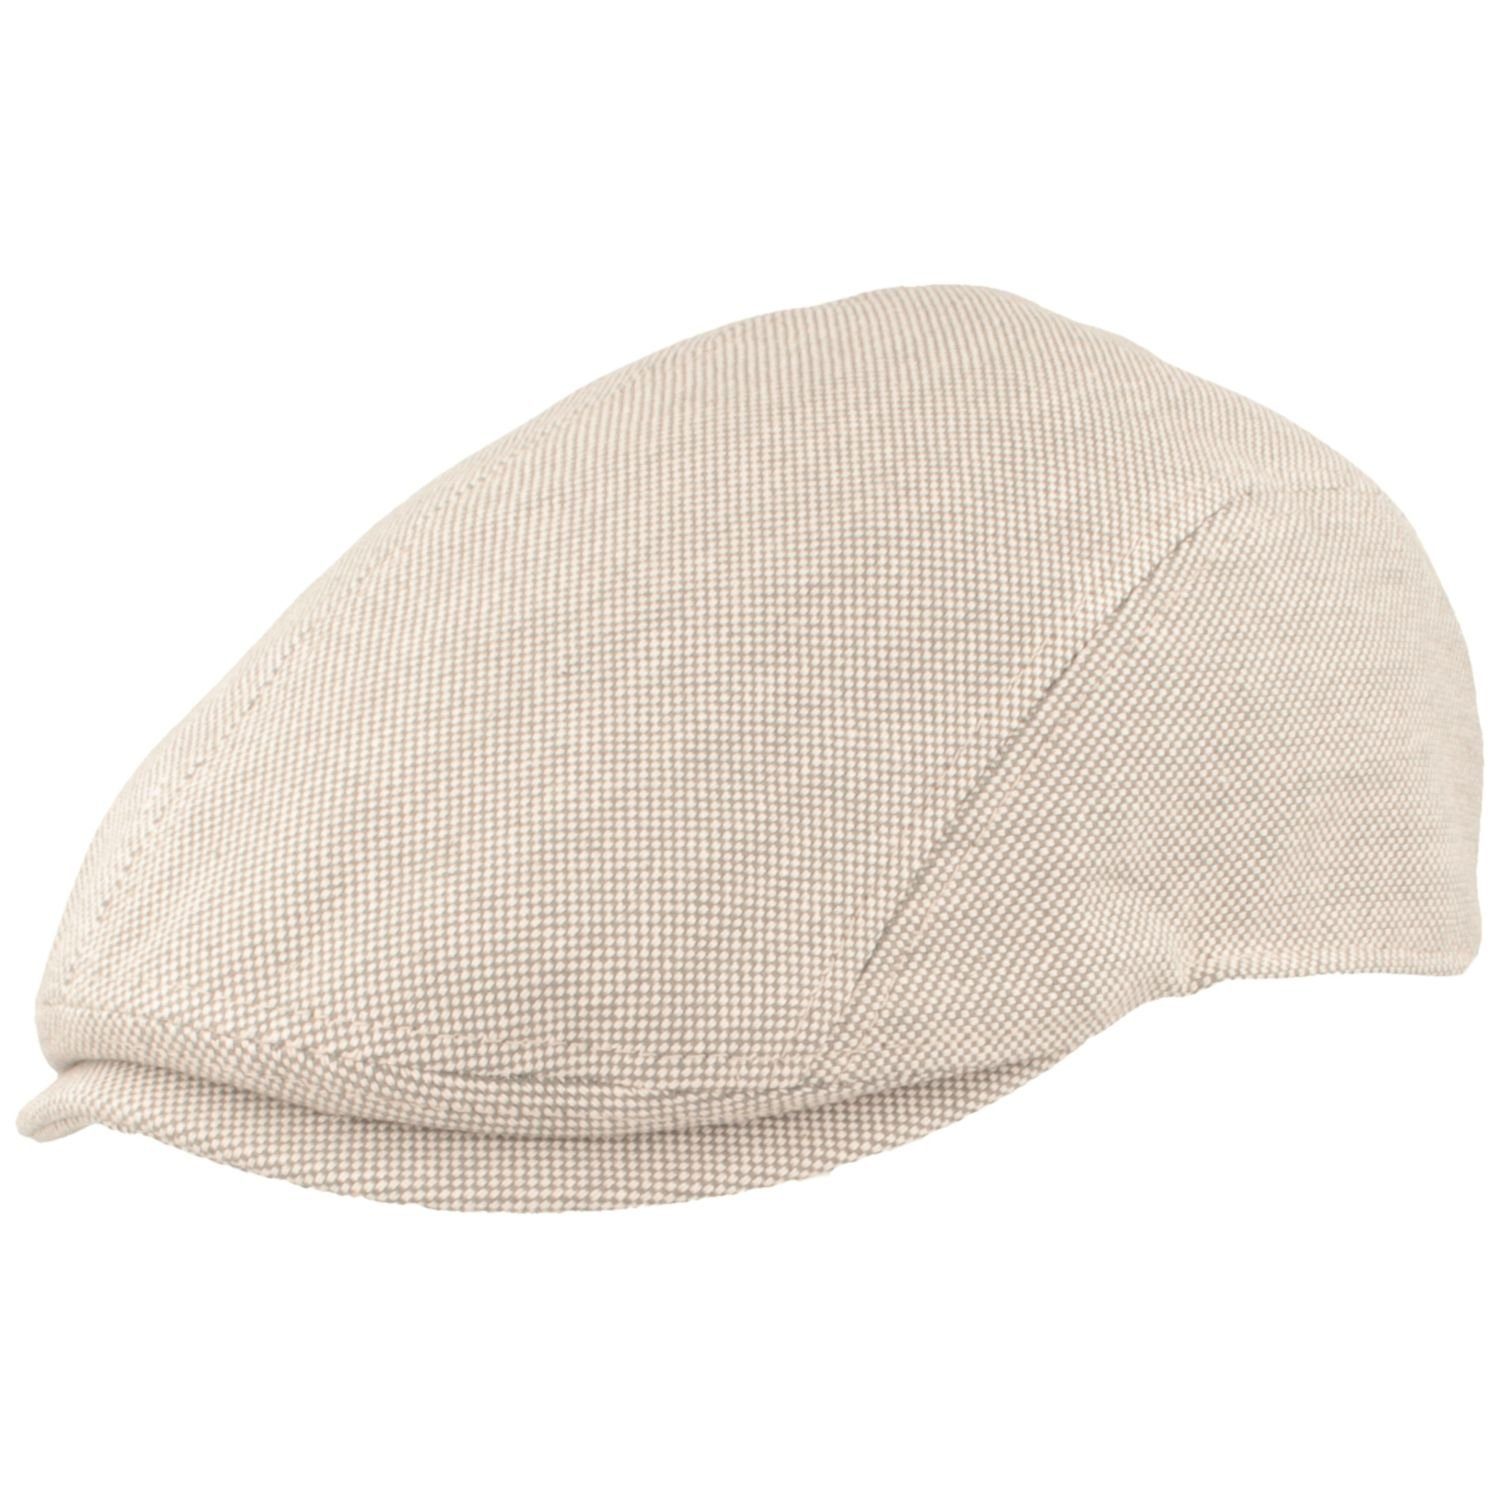 Sommer-Mütze grau aus 100% 530 Schiebermütze mel. Baumwoll-Strukturstoff Bullani